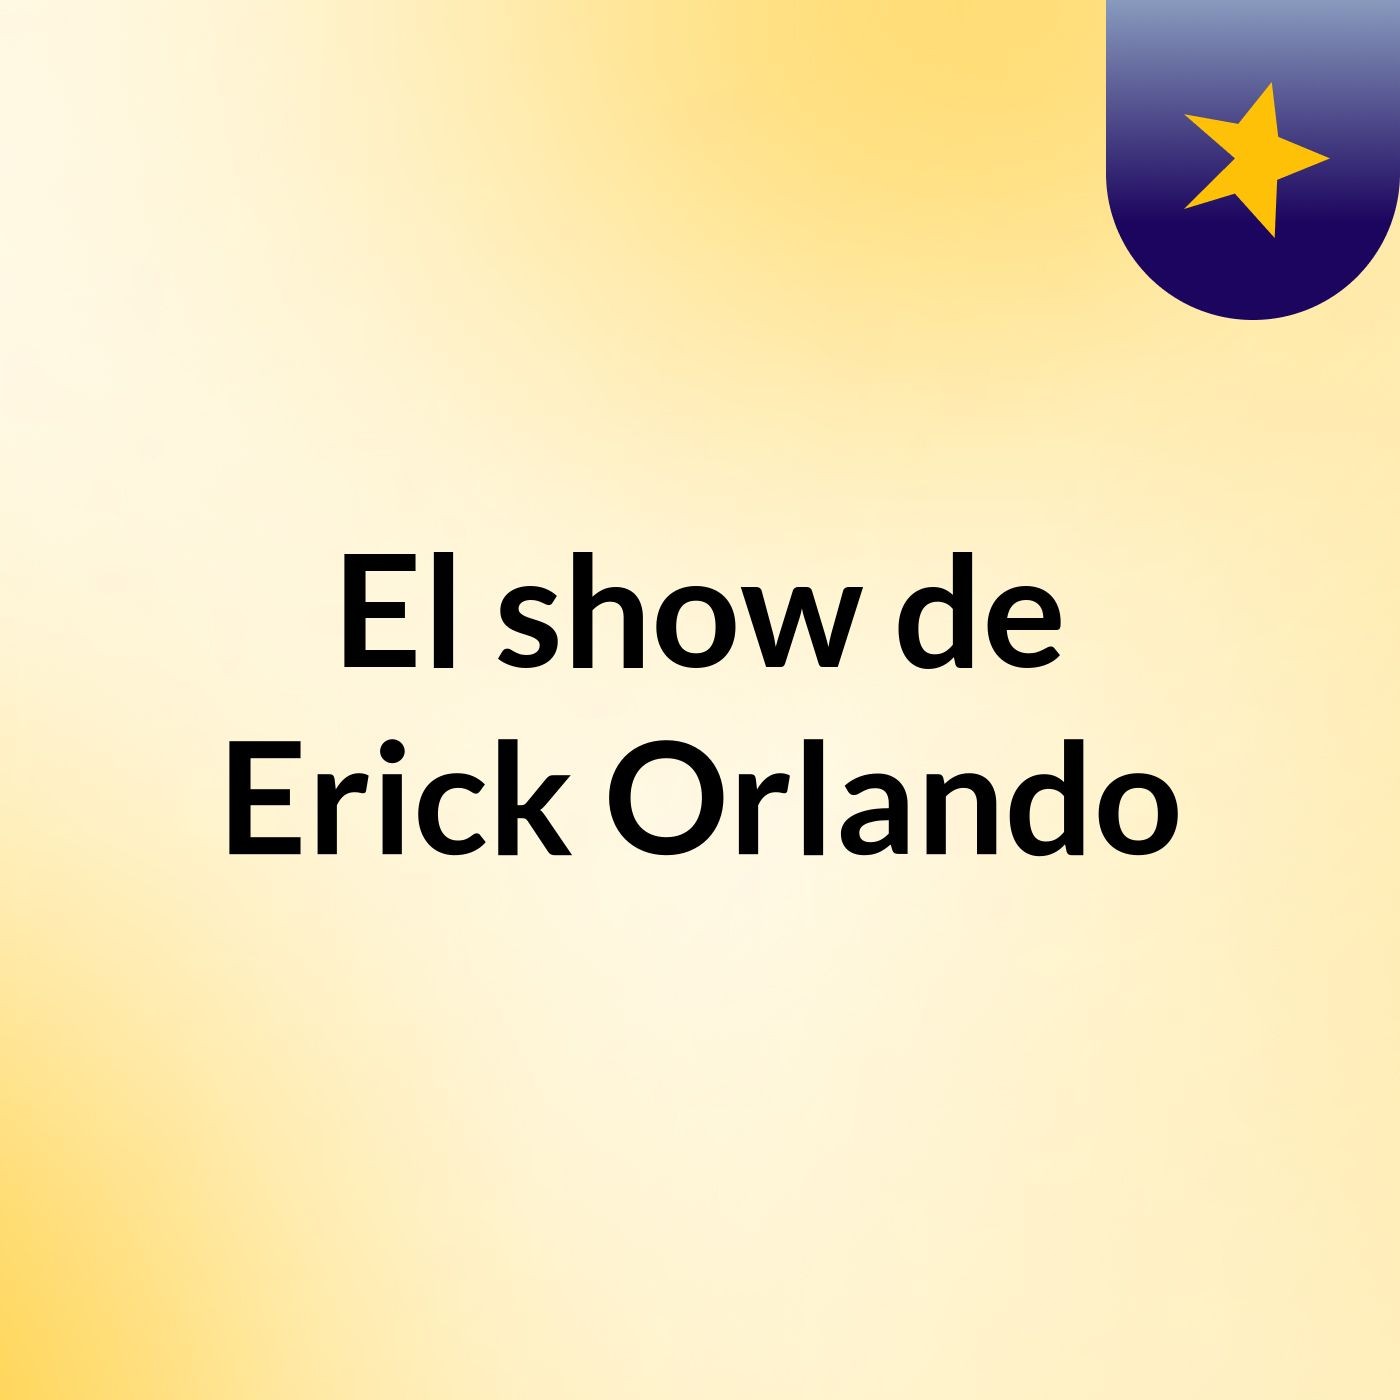 El show de Erick Orlando